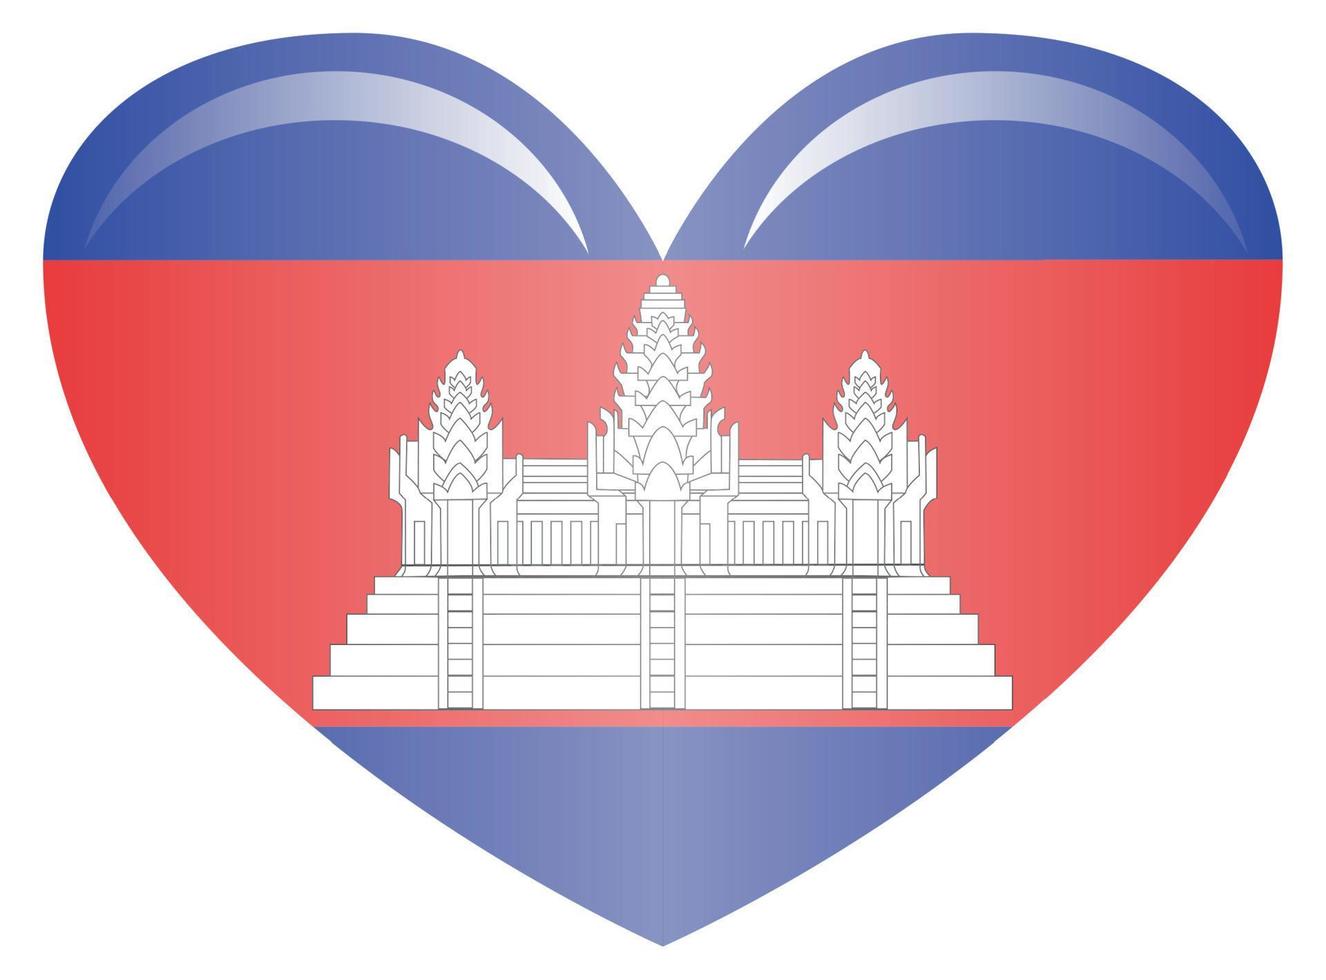 Flagge von Kambodscha. genaue Abmessungen, Elementproportionen und Farben vektor